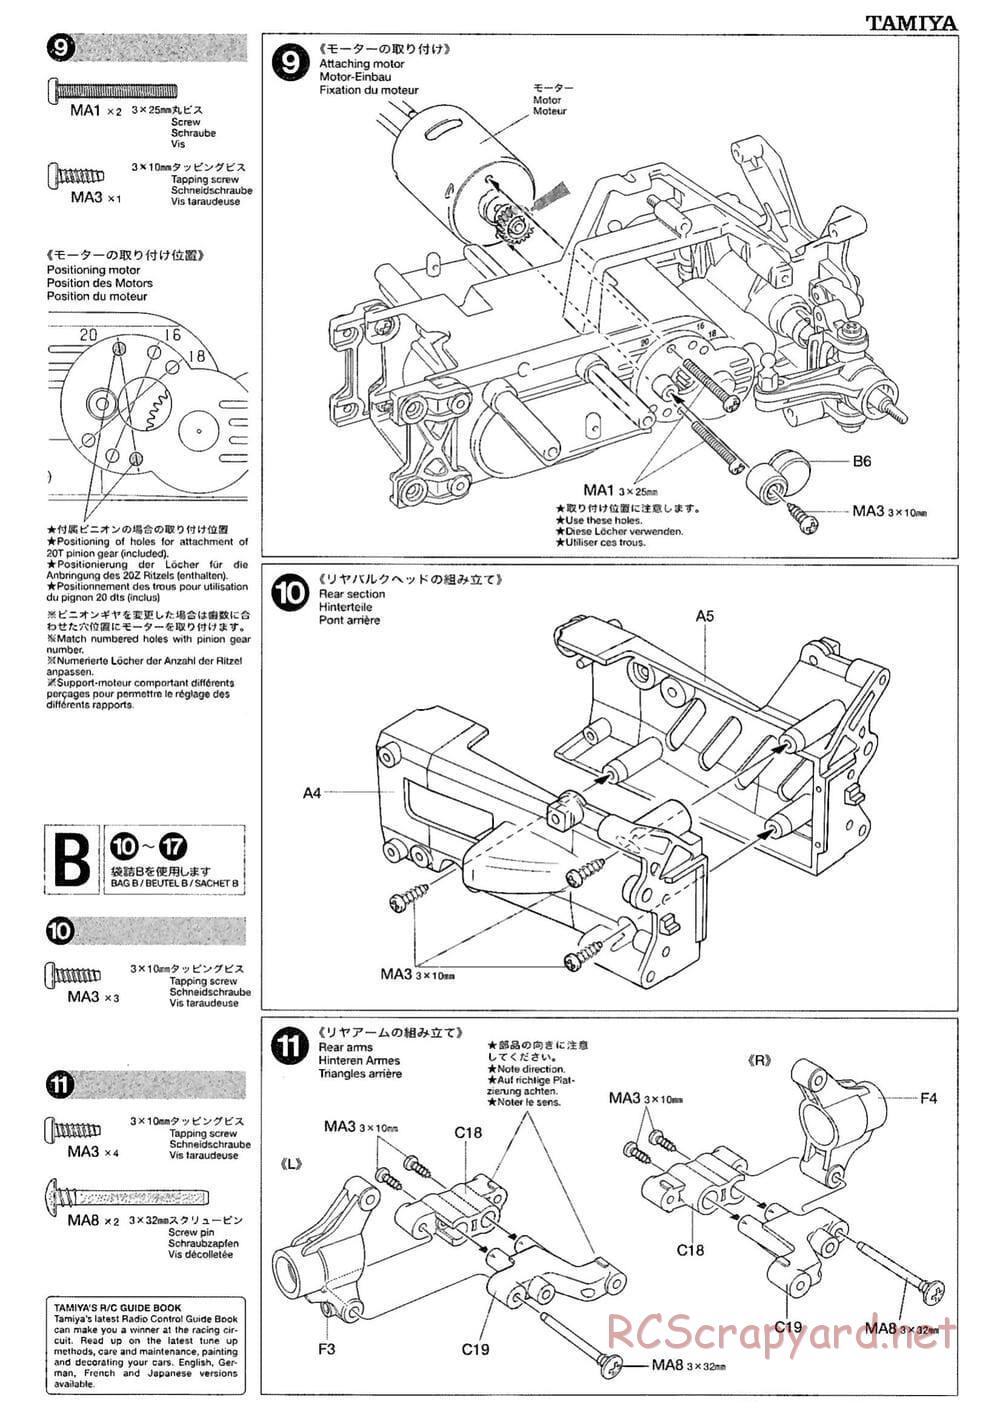 Tamiya - M-03M Chassis - Manual - Page 7